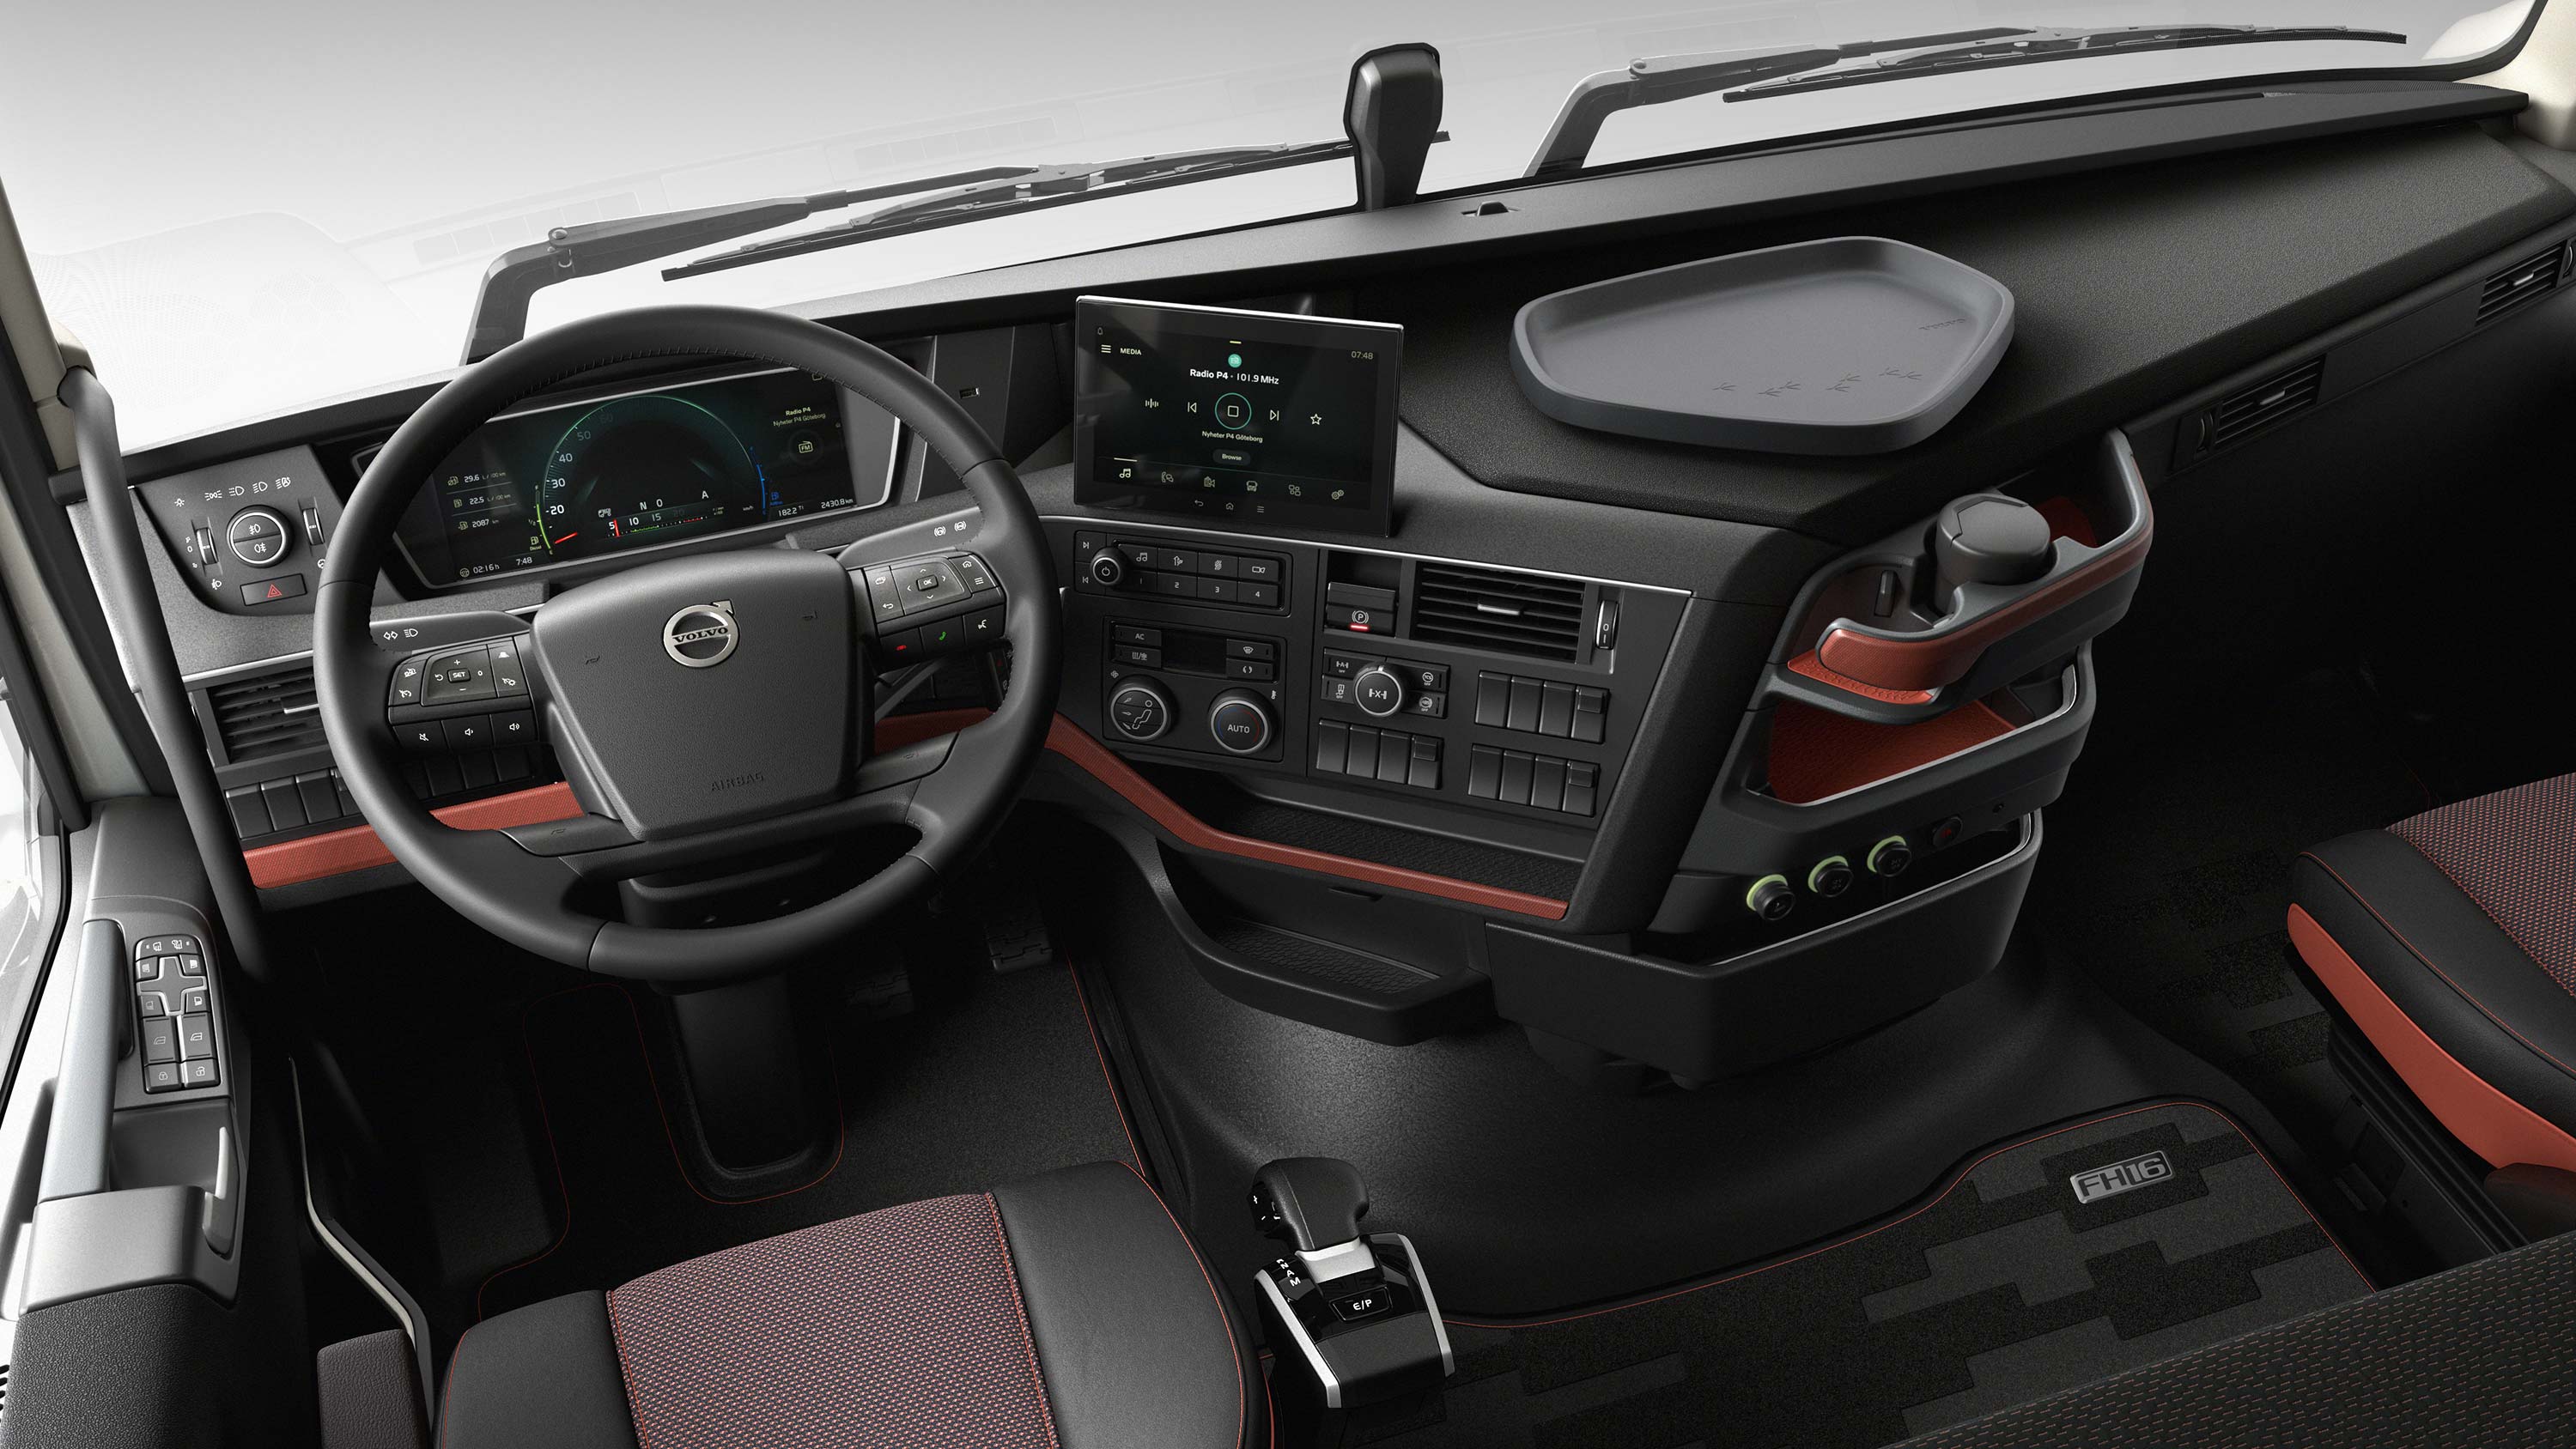 L'interface conducteur du Volvo FH16 permet au conducteur de contrôler facilement son véhicule.